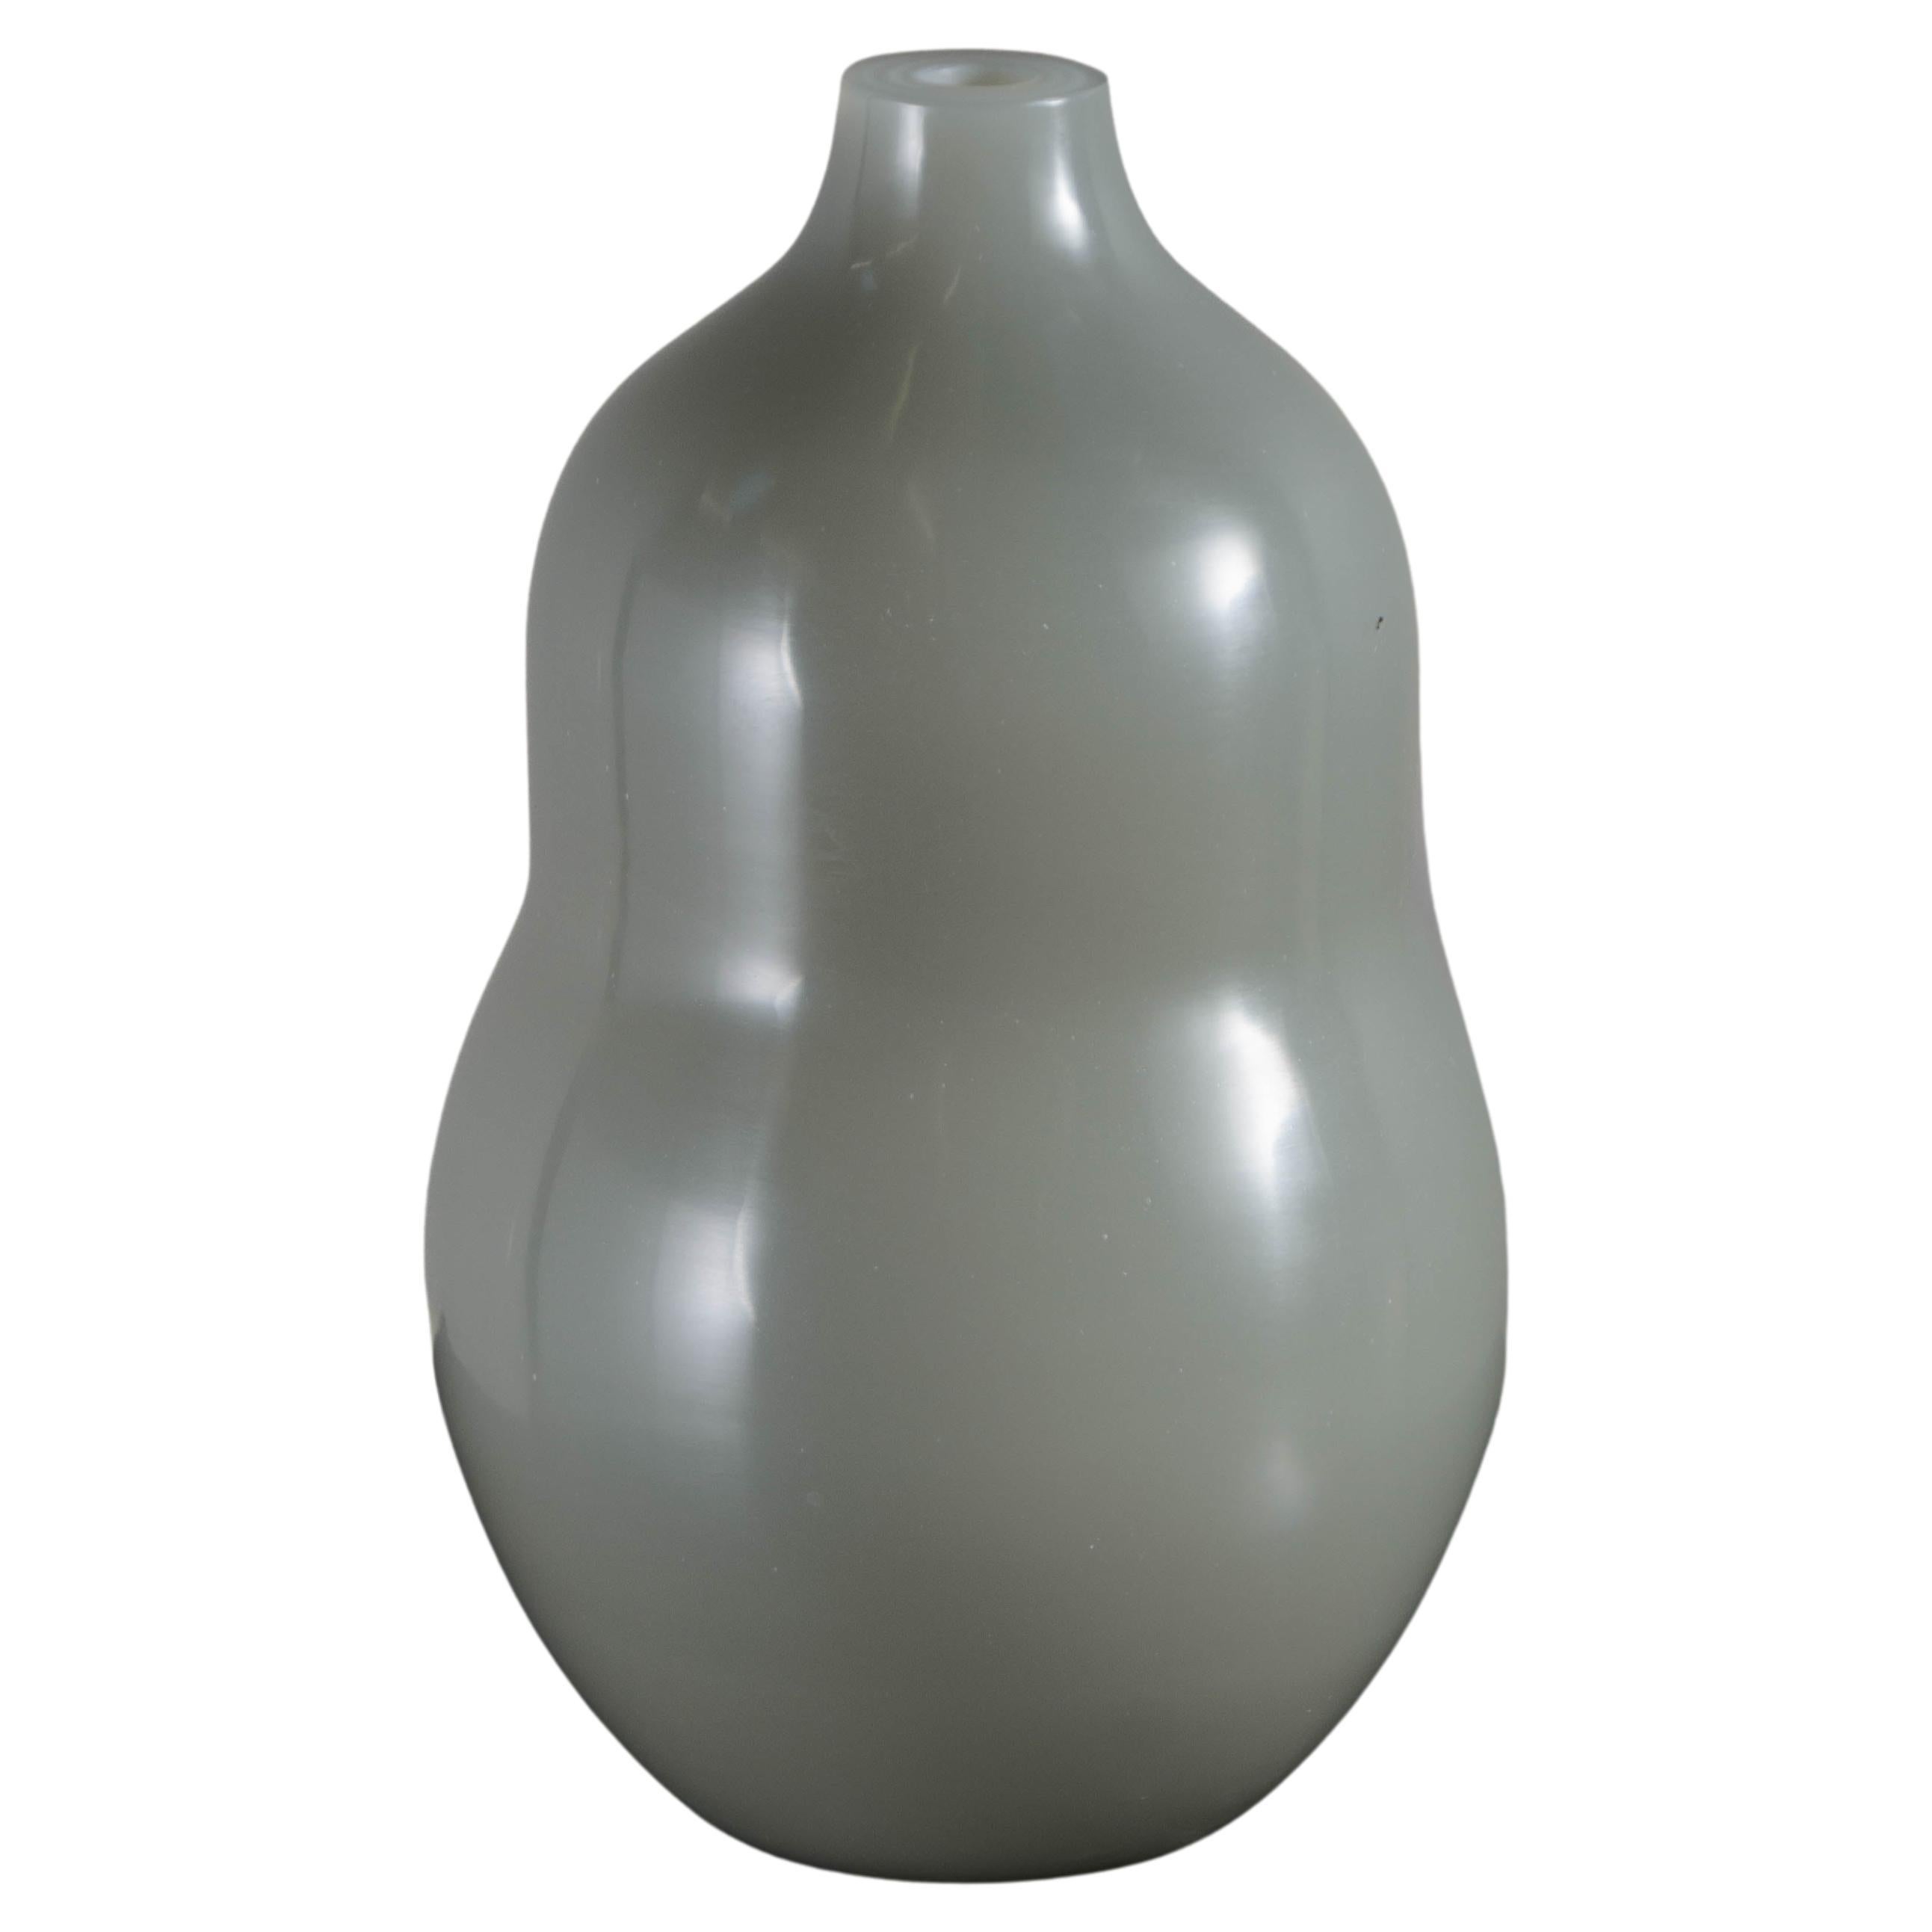 Grand vase gourde contemporain en verre pékinois gris de Robert Kuo, édition limitée